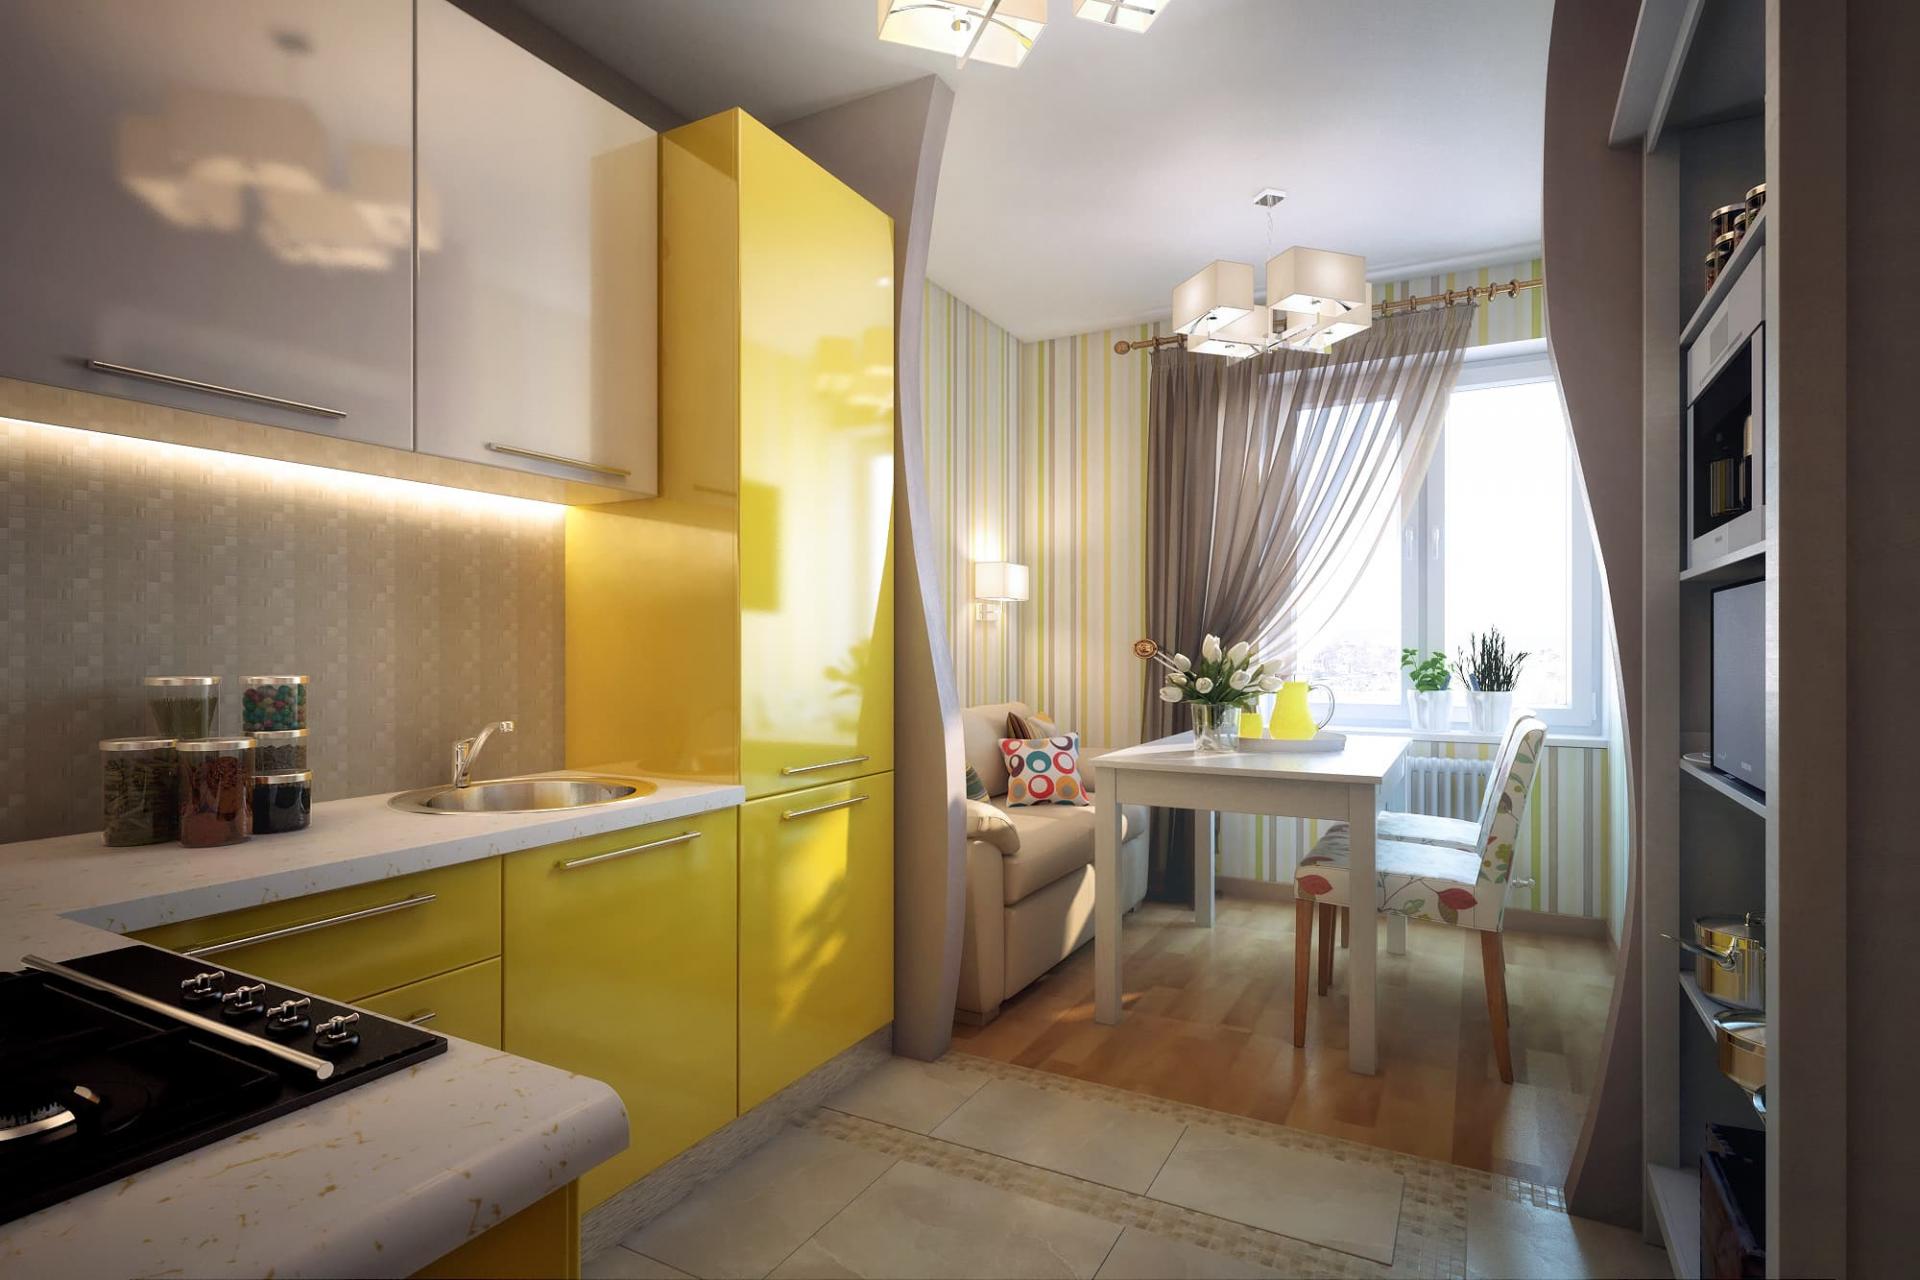 Дизайн кухни 5 кв м – фото интерьеров маленьких 5-метровых кухонь